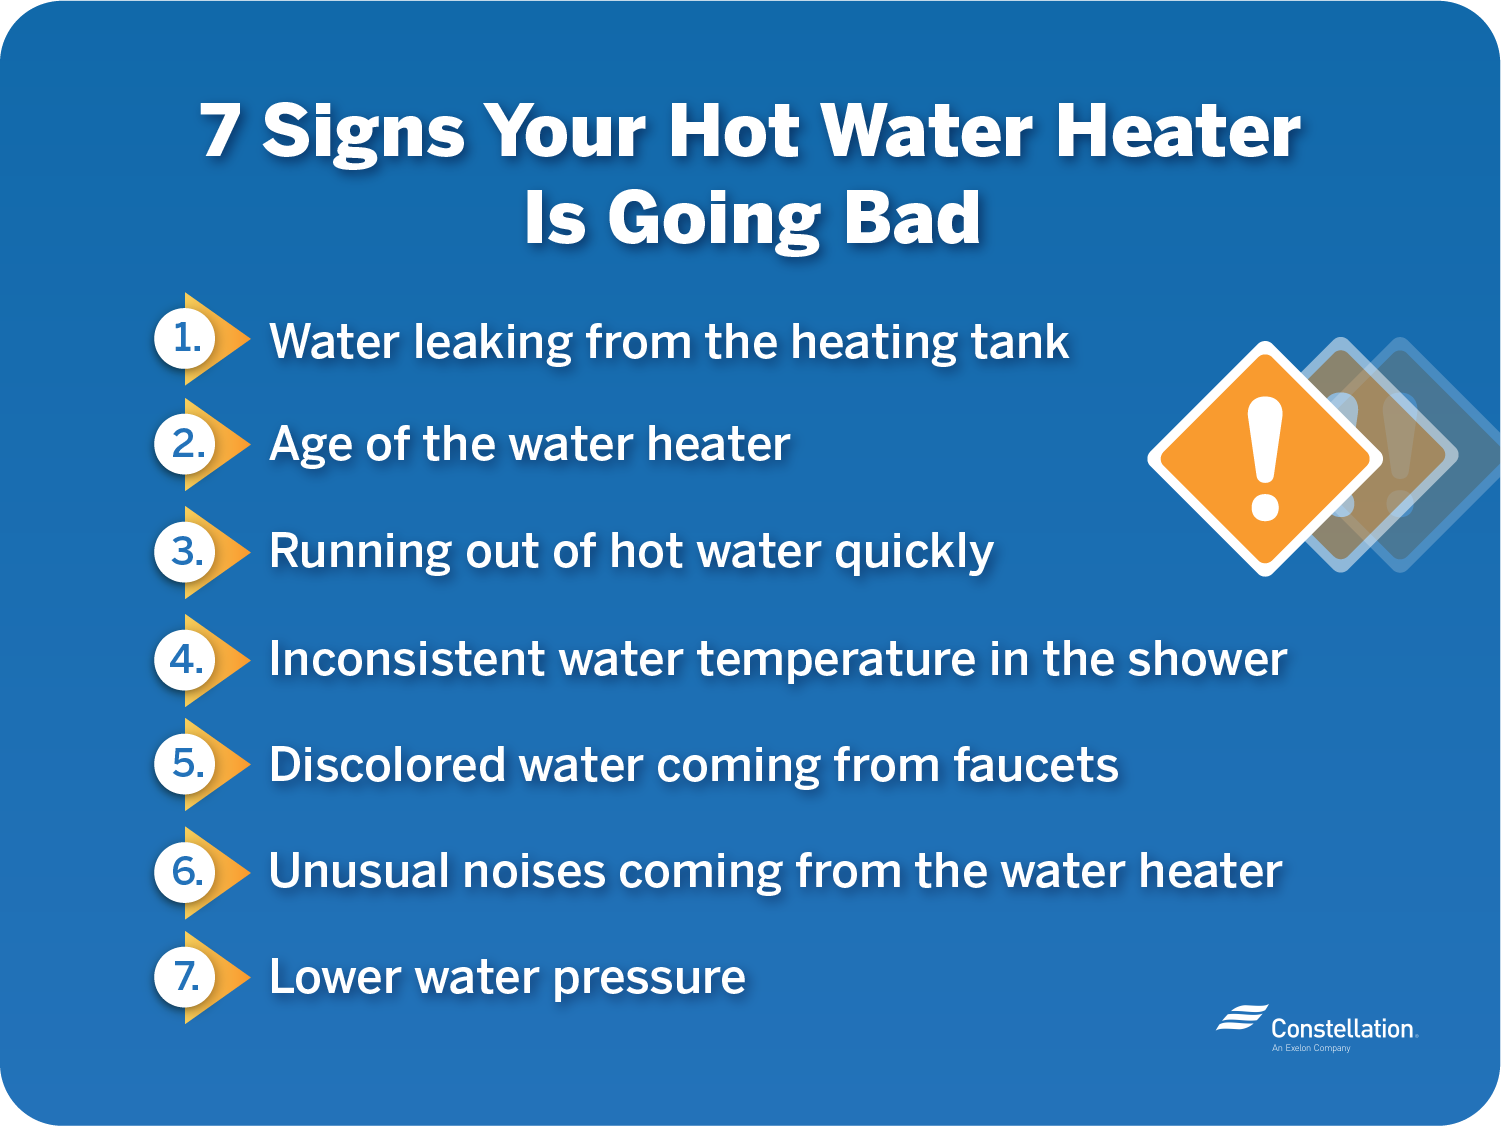 有迹象表明你的热水器要坏了